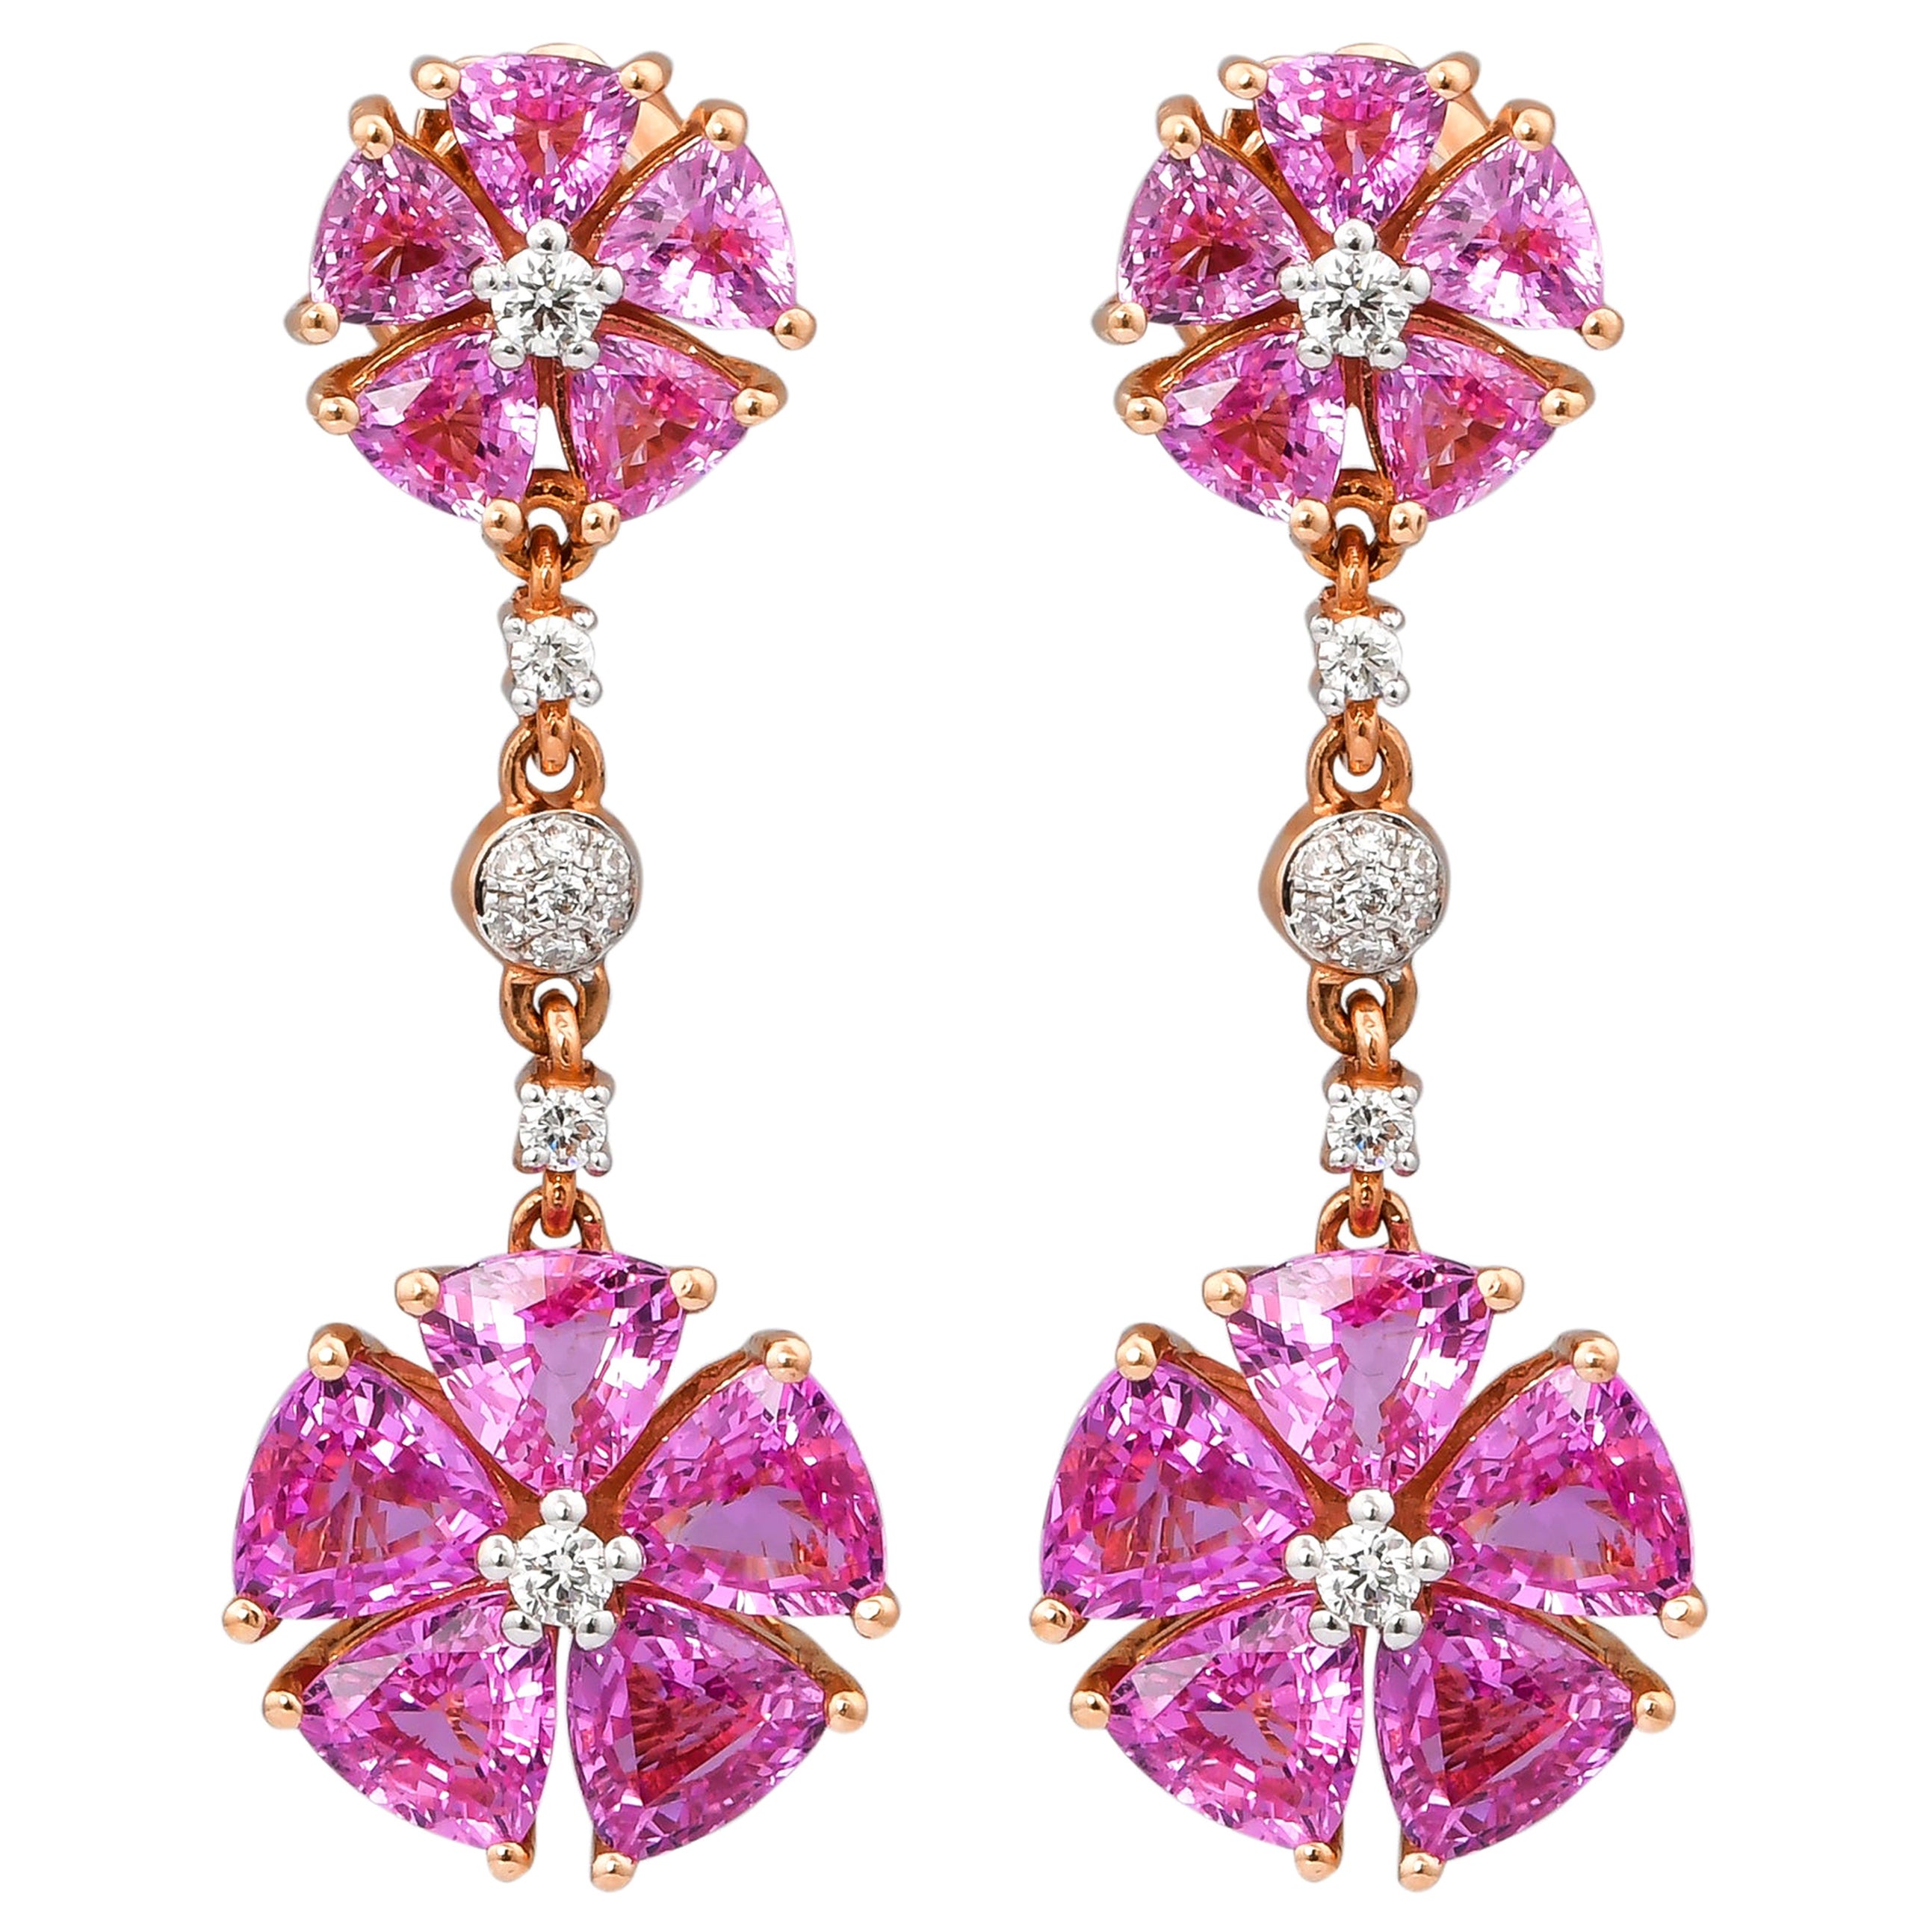 6.9 Carat Pink Sapphire & Diamond Earring in 18 Karat Rose Gold